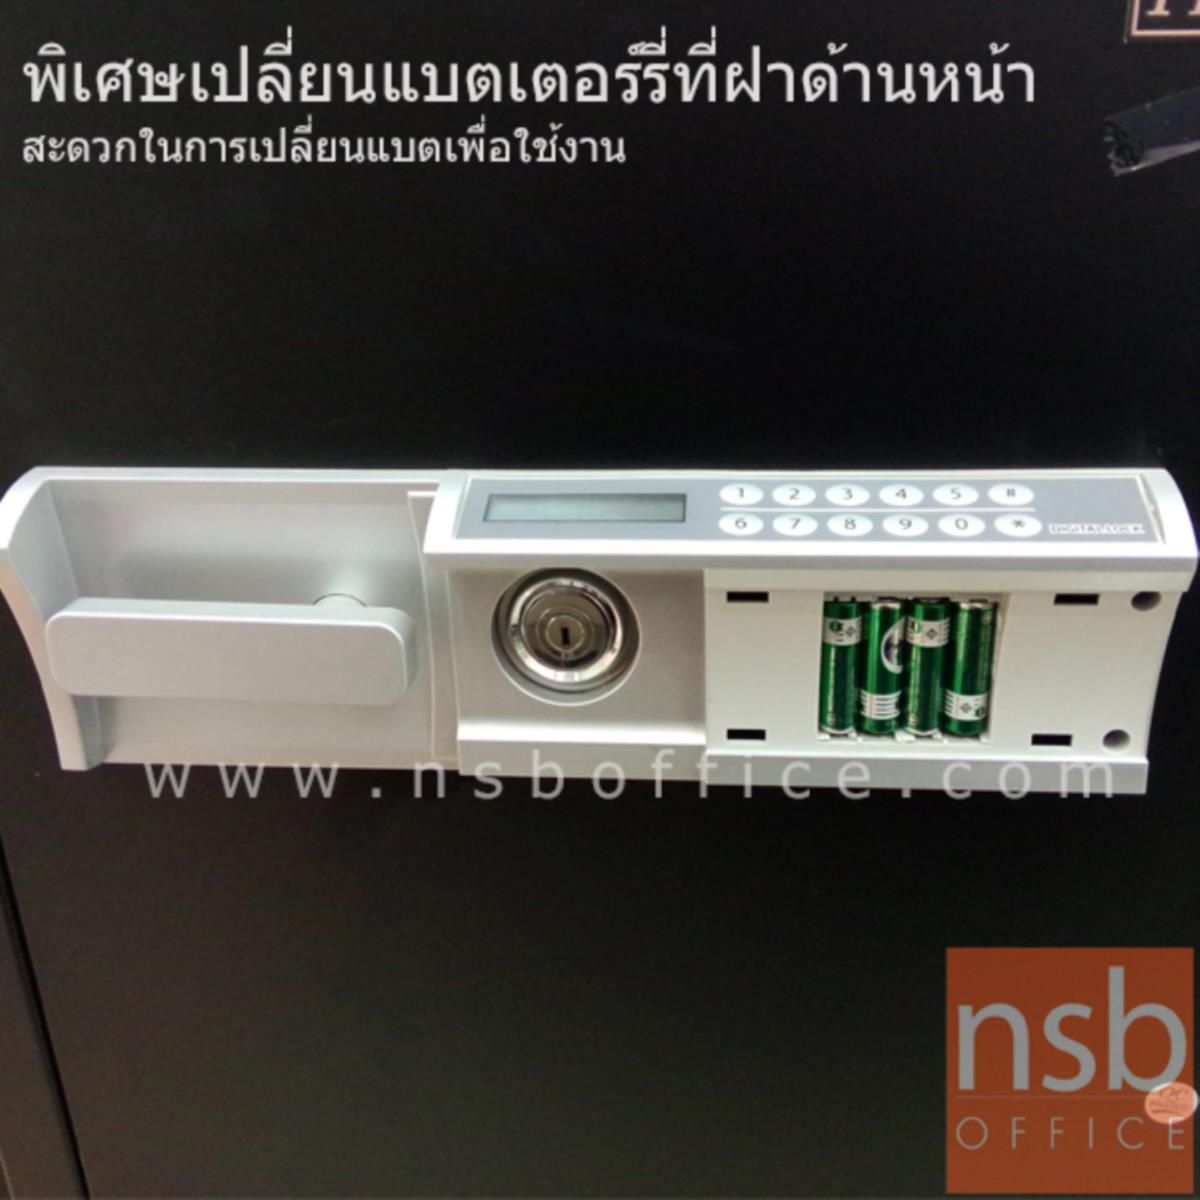 ตู้เซฟดิจิตอล 190 กก.  รุ่น PRESIDENT-SB40D2  มี 1 กุญแจ 1 รหัส (รหัสใช้กดหน้าตู้)